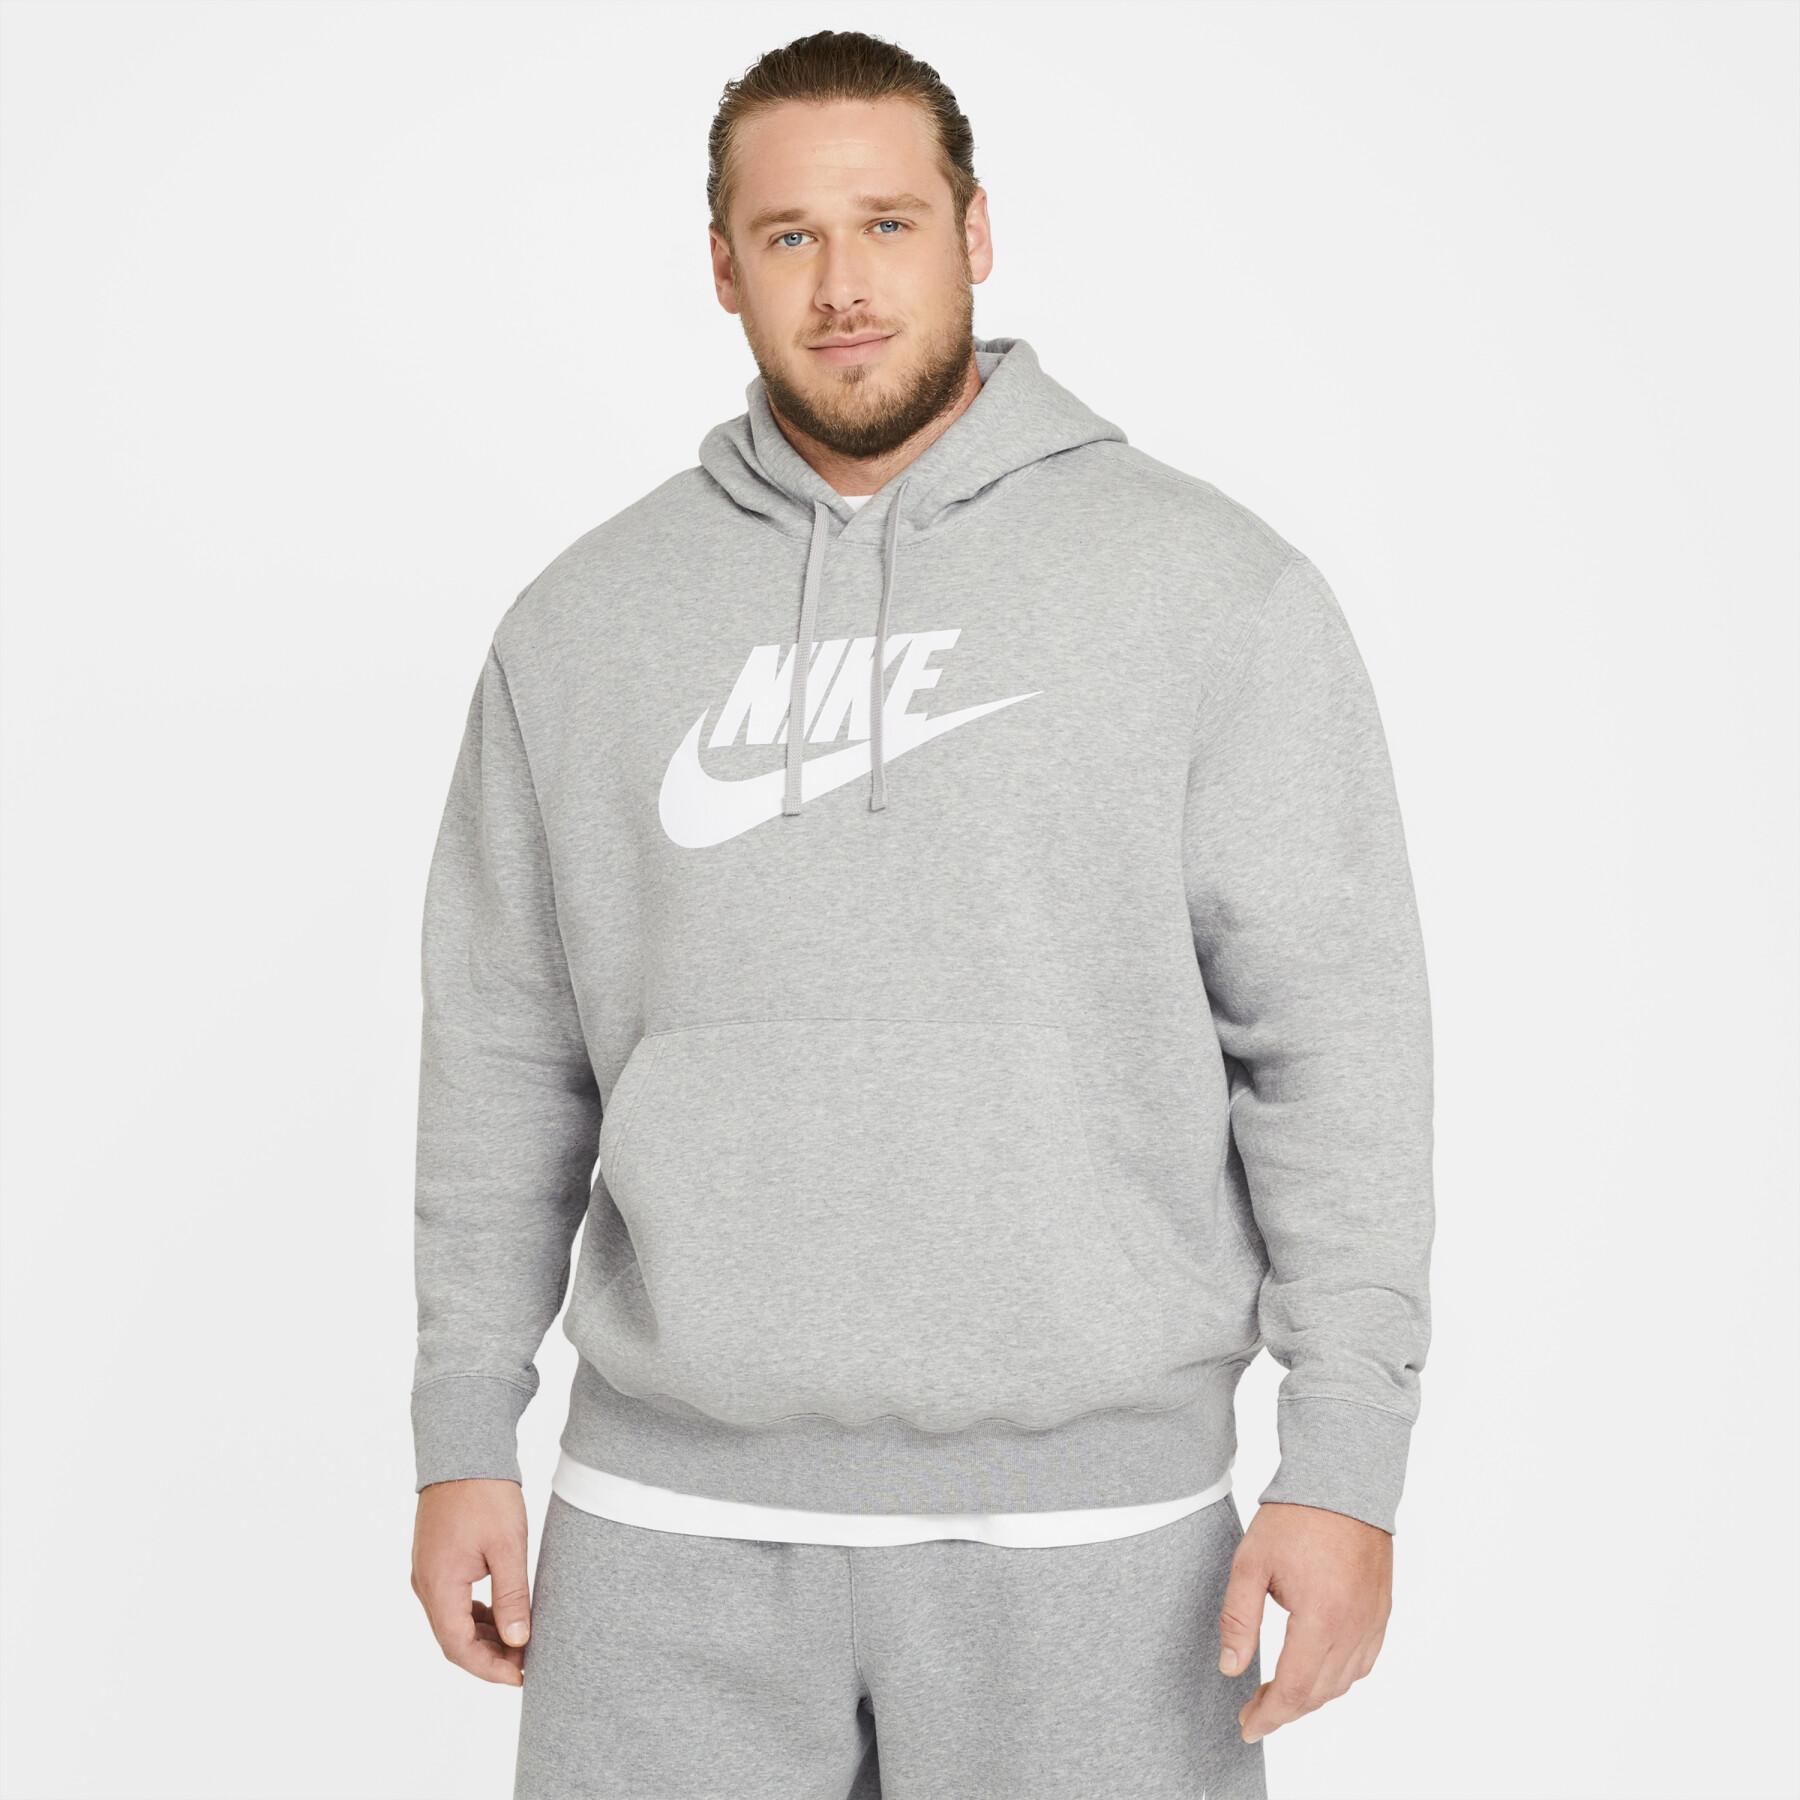 Hooded sweatshirt Nike Sportswear Club Fleece - Nike - Brands - Lifestyle